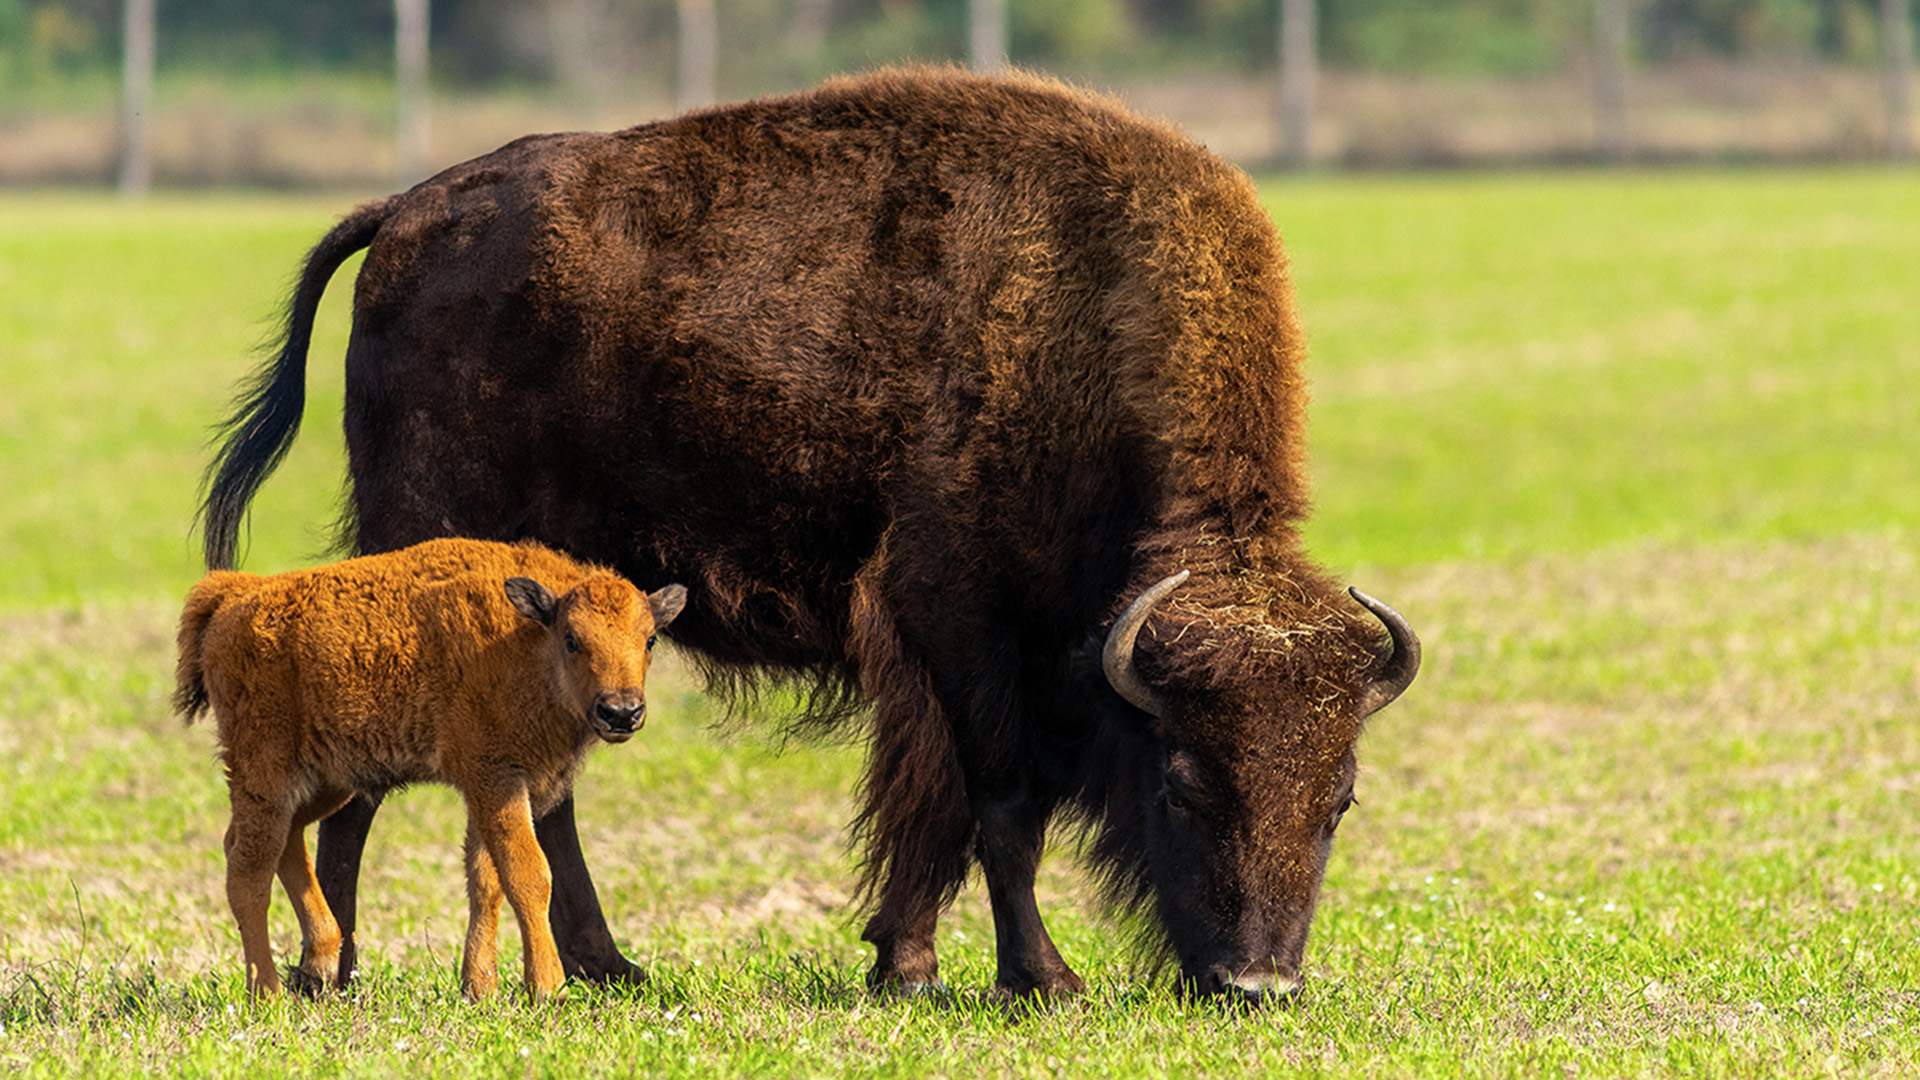 Bison or Buffalo?